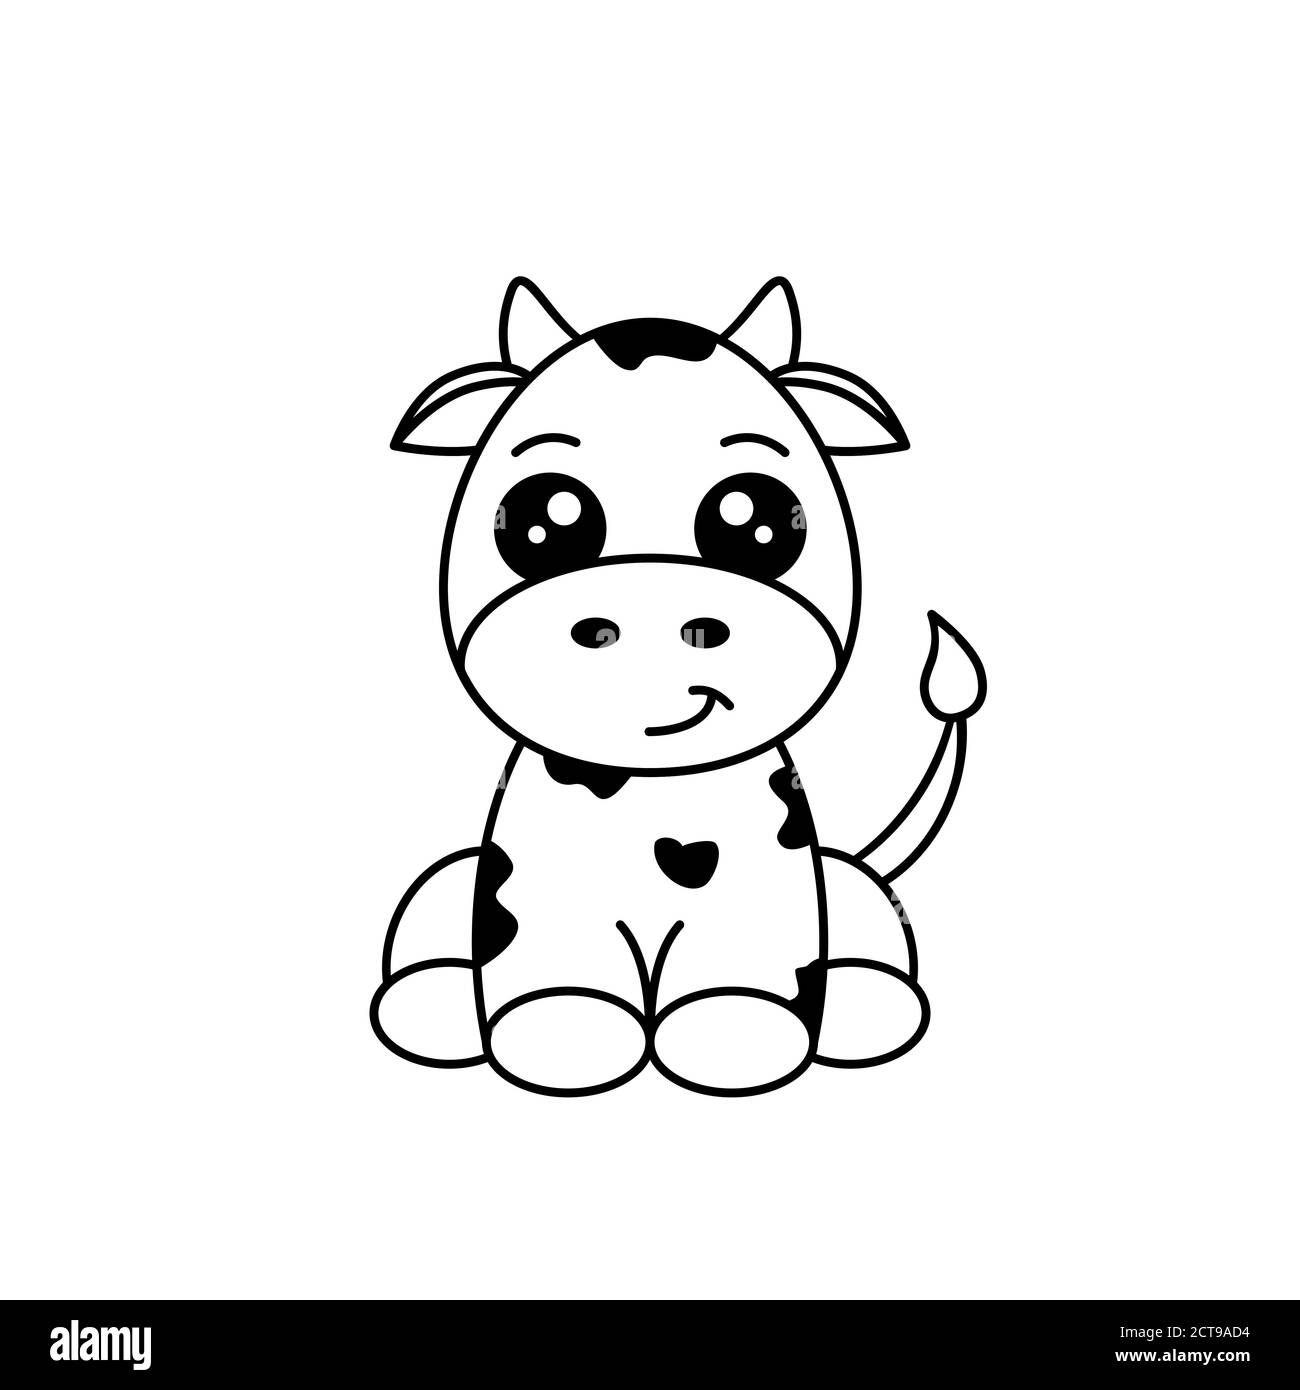 Jolie vache noire et blanche. Personnage de dessin animé animal drôle. Vache assise et souriante. Petite vache avec taches noires. Dessin de veau puéril. Vecteur Illustration de Vecteur